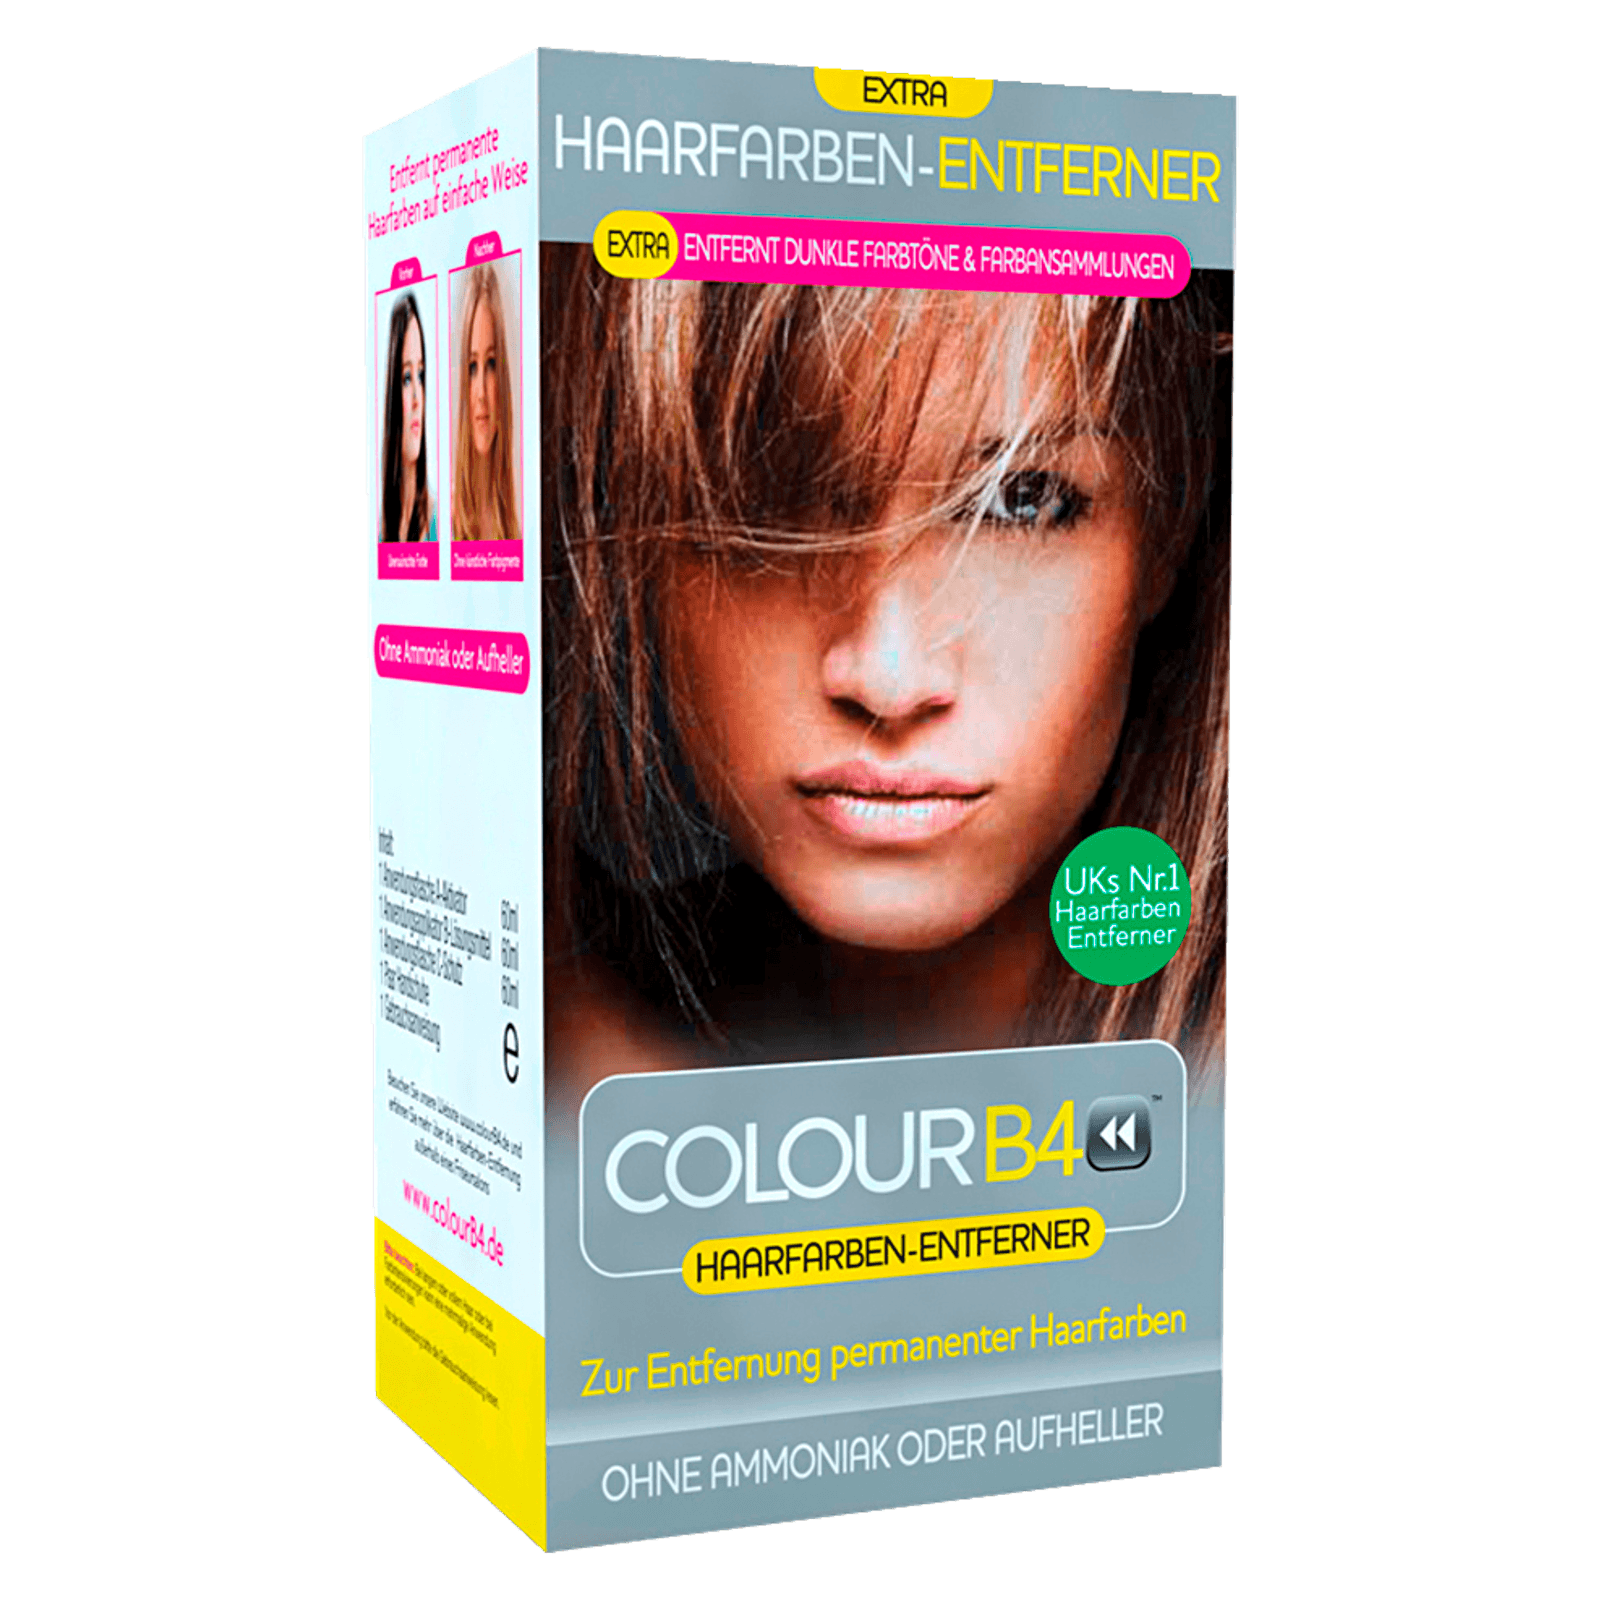 Colour B4 Extra Haarfarben Entferner bei REWE online bestellen!